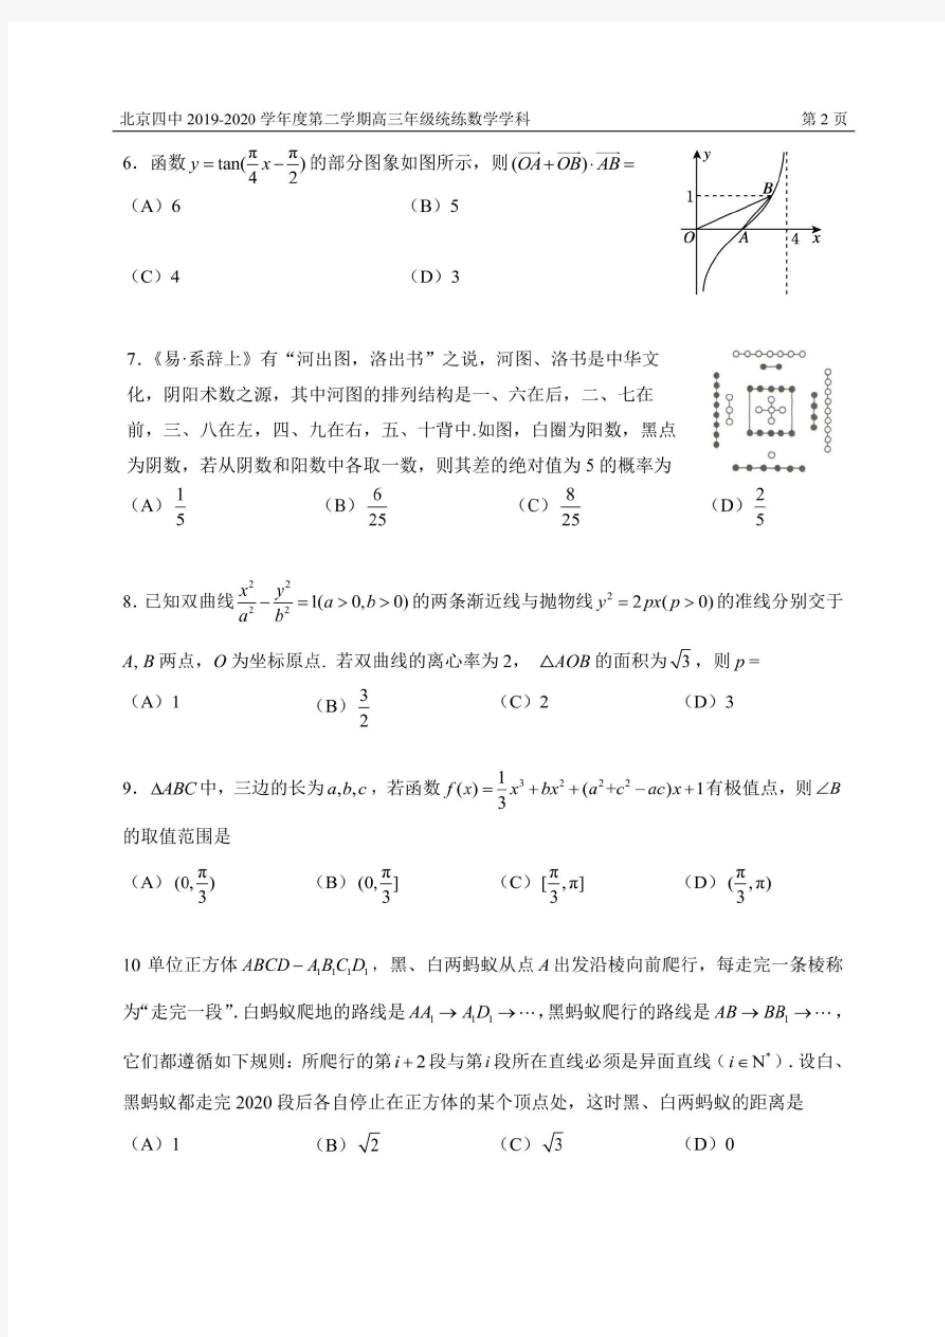 北京四中2019-2020学年度第二学期高三年级统练数学